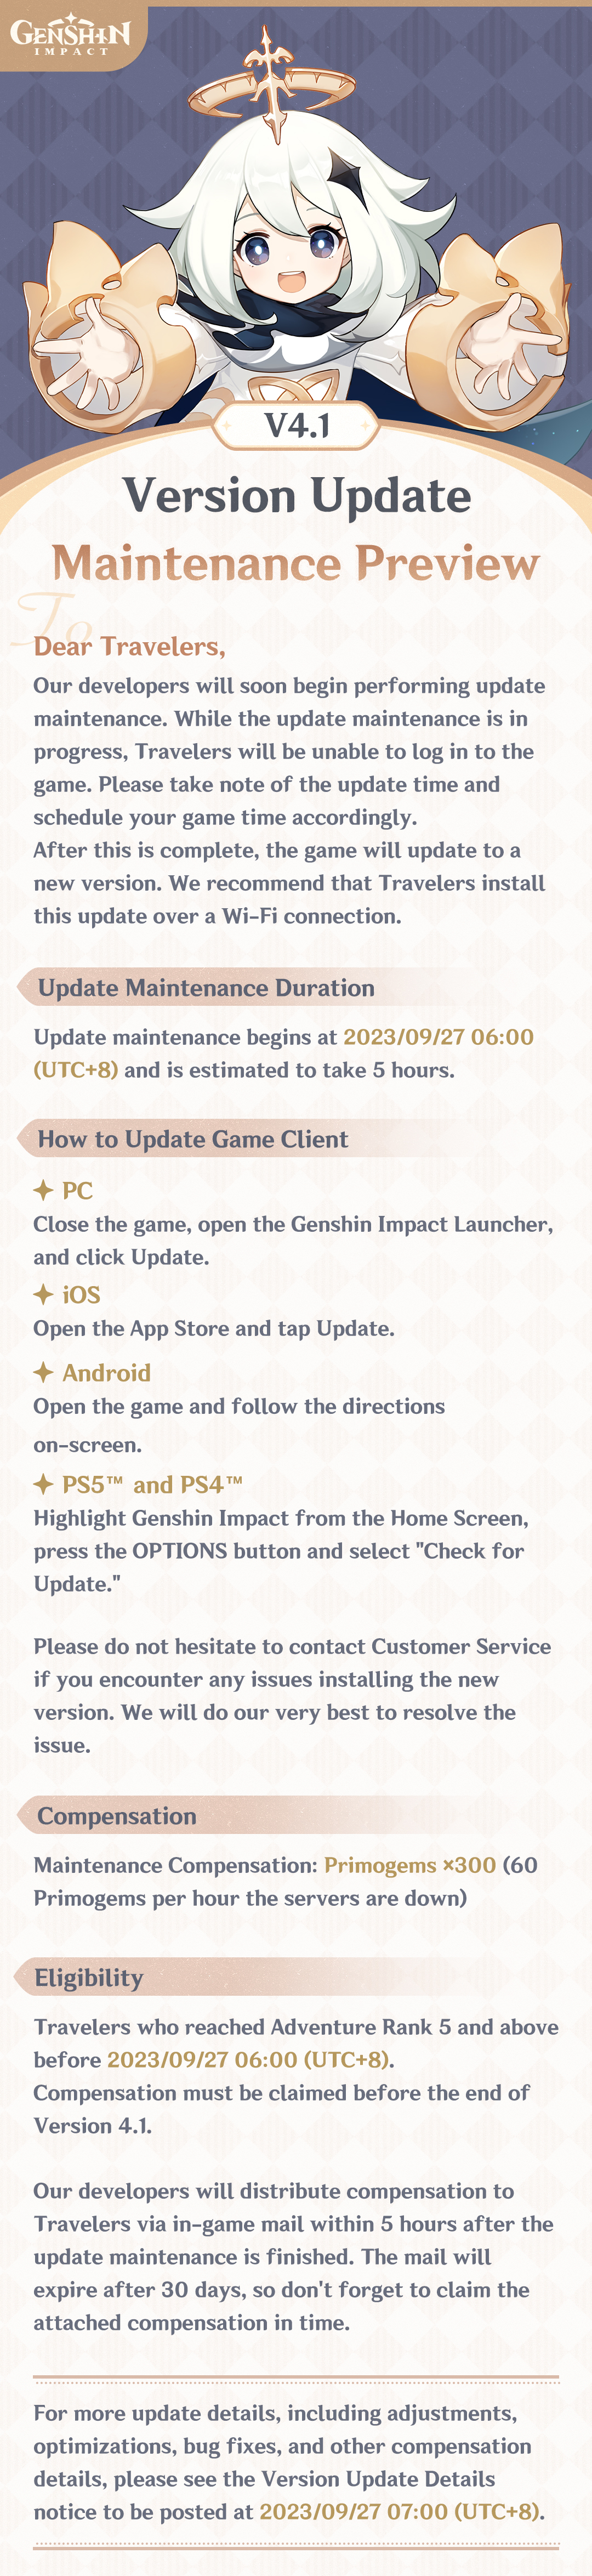 genshin impact 4.1 update: Genshin Impact 4.1 update: Date, key